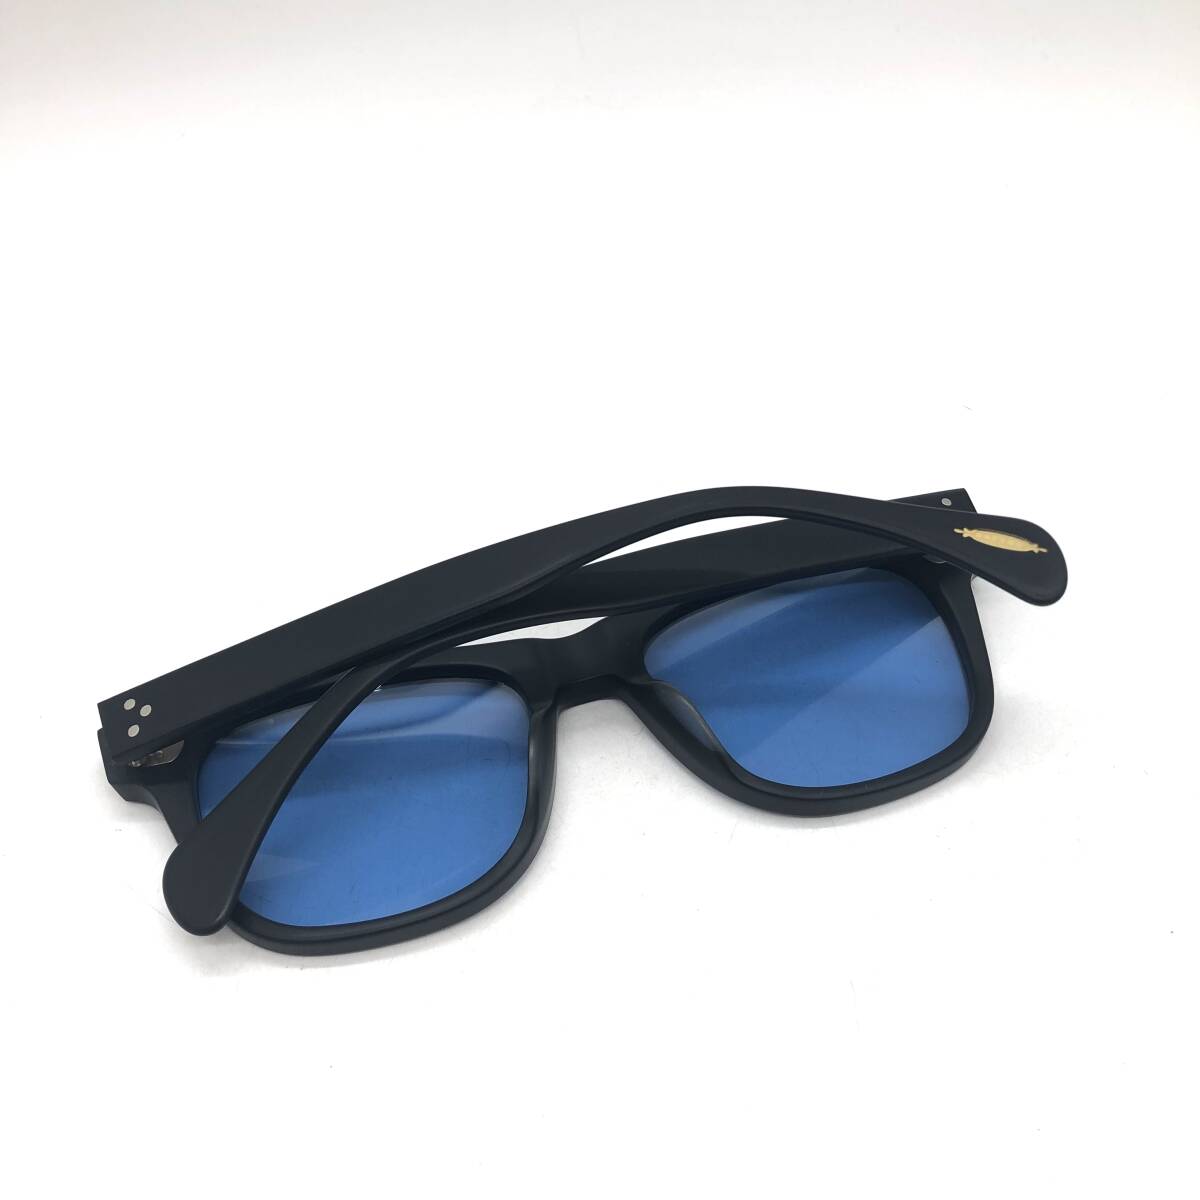 [ beautiful goods * unused ]① OLIVER PEOPLES Oliver Peoples sunglasses OV5302-U 1031 R1 mat black square date glasses 